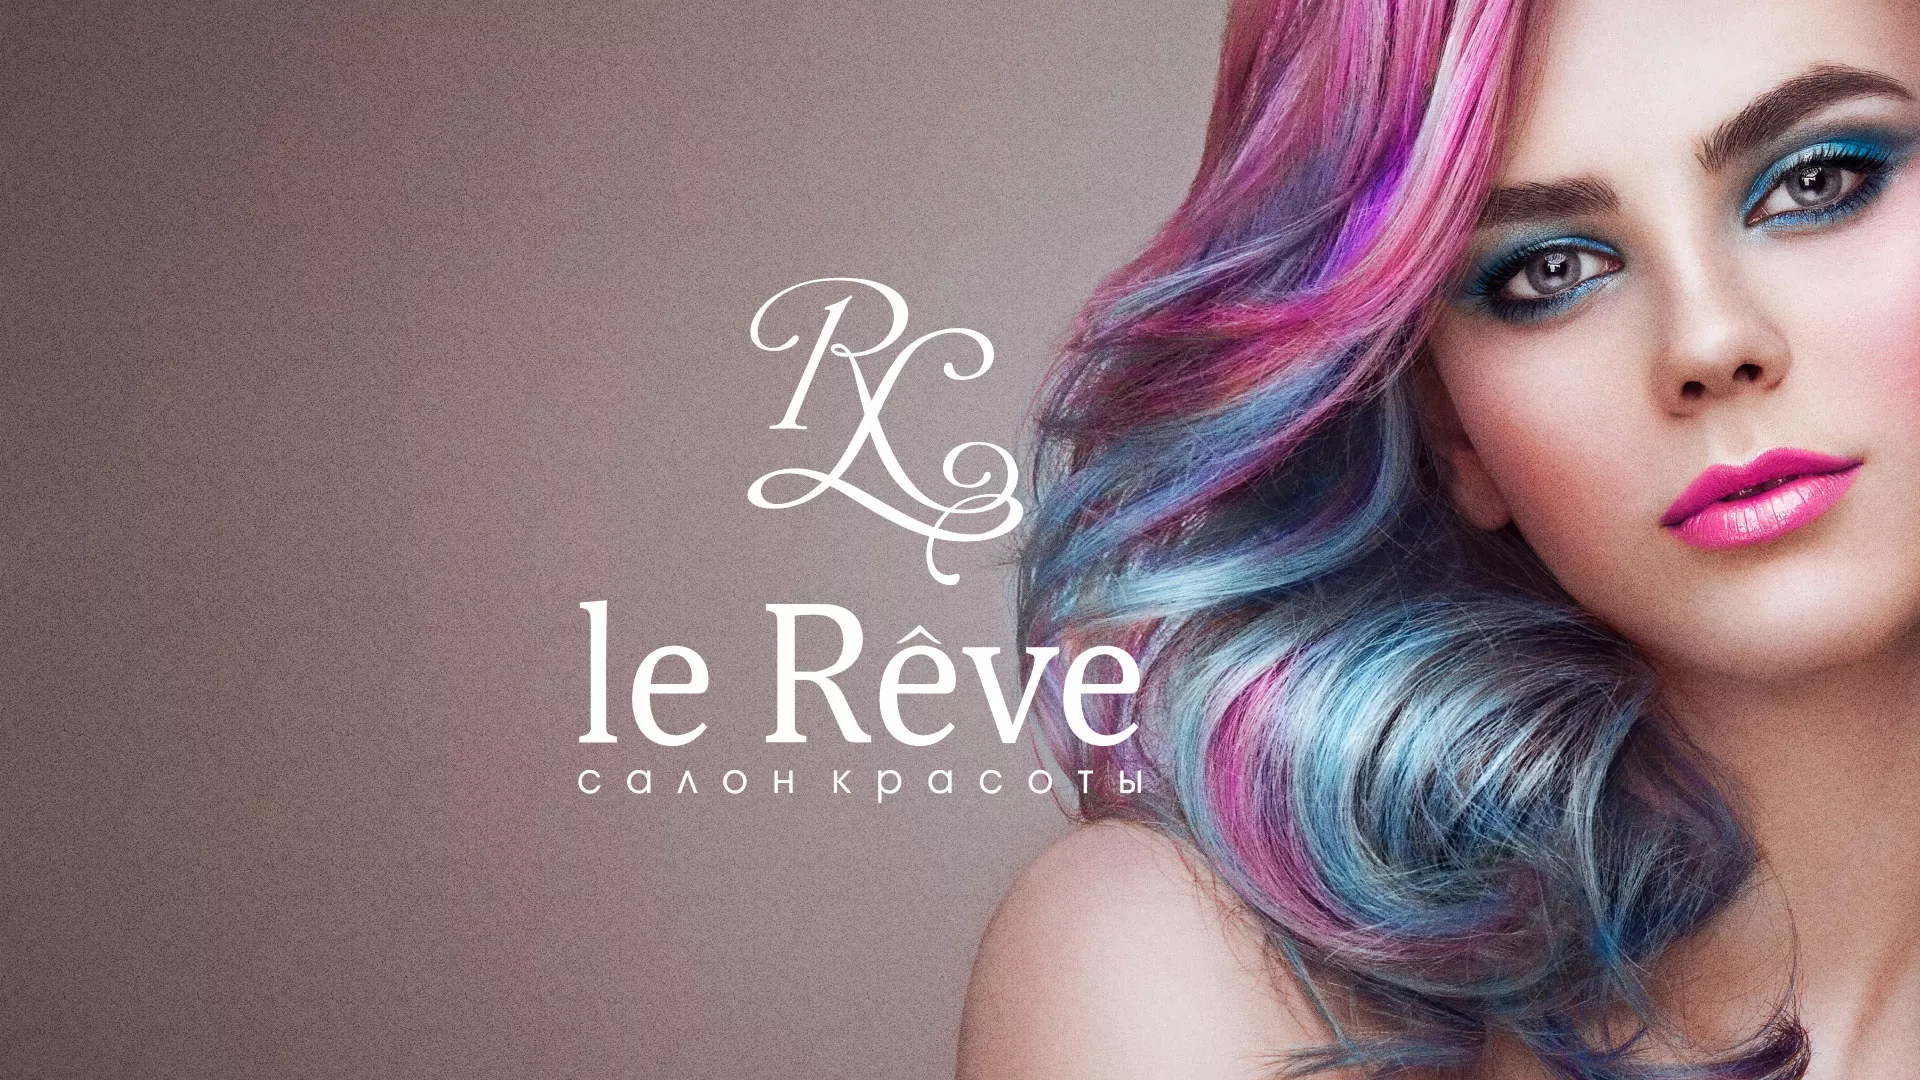 Создание сайта для салона красоты «Le Reve» в Биробиджане